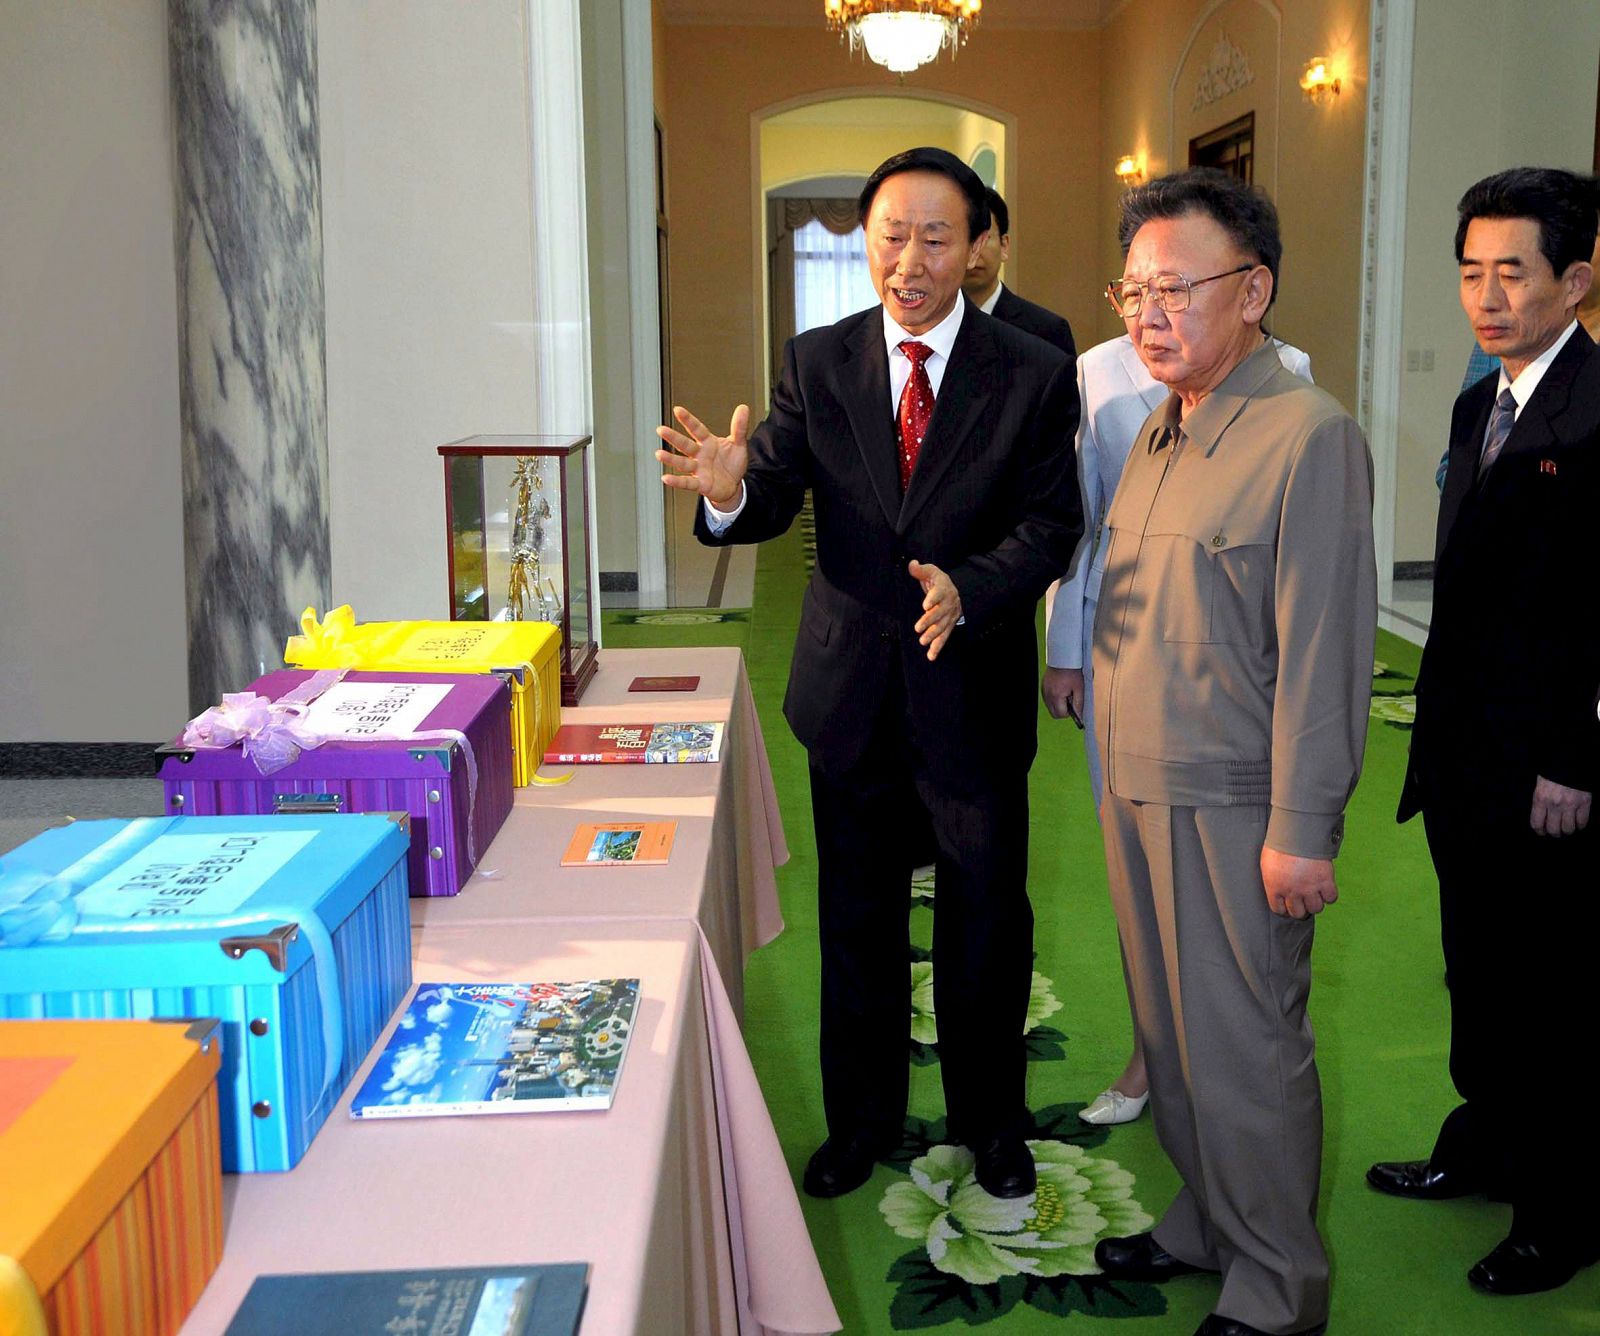 Kim Jong-il (centro) escucha al dirigente chino Wang Jiarui el pasado viernes en Pyongyang.